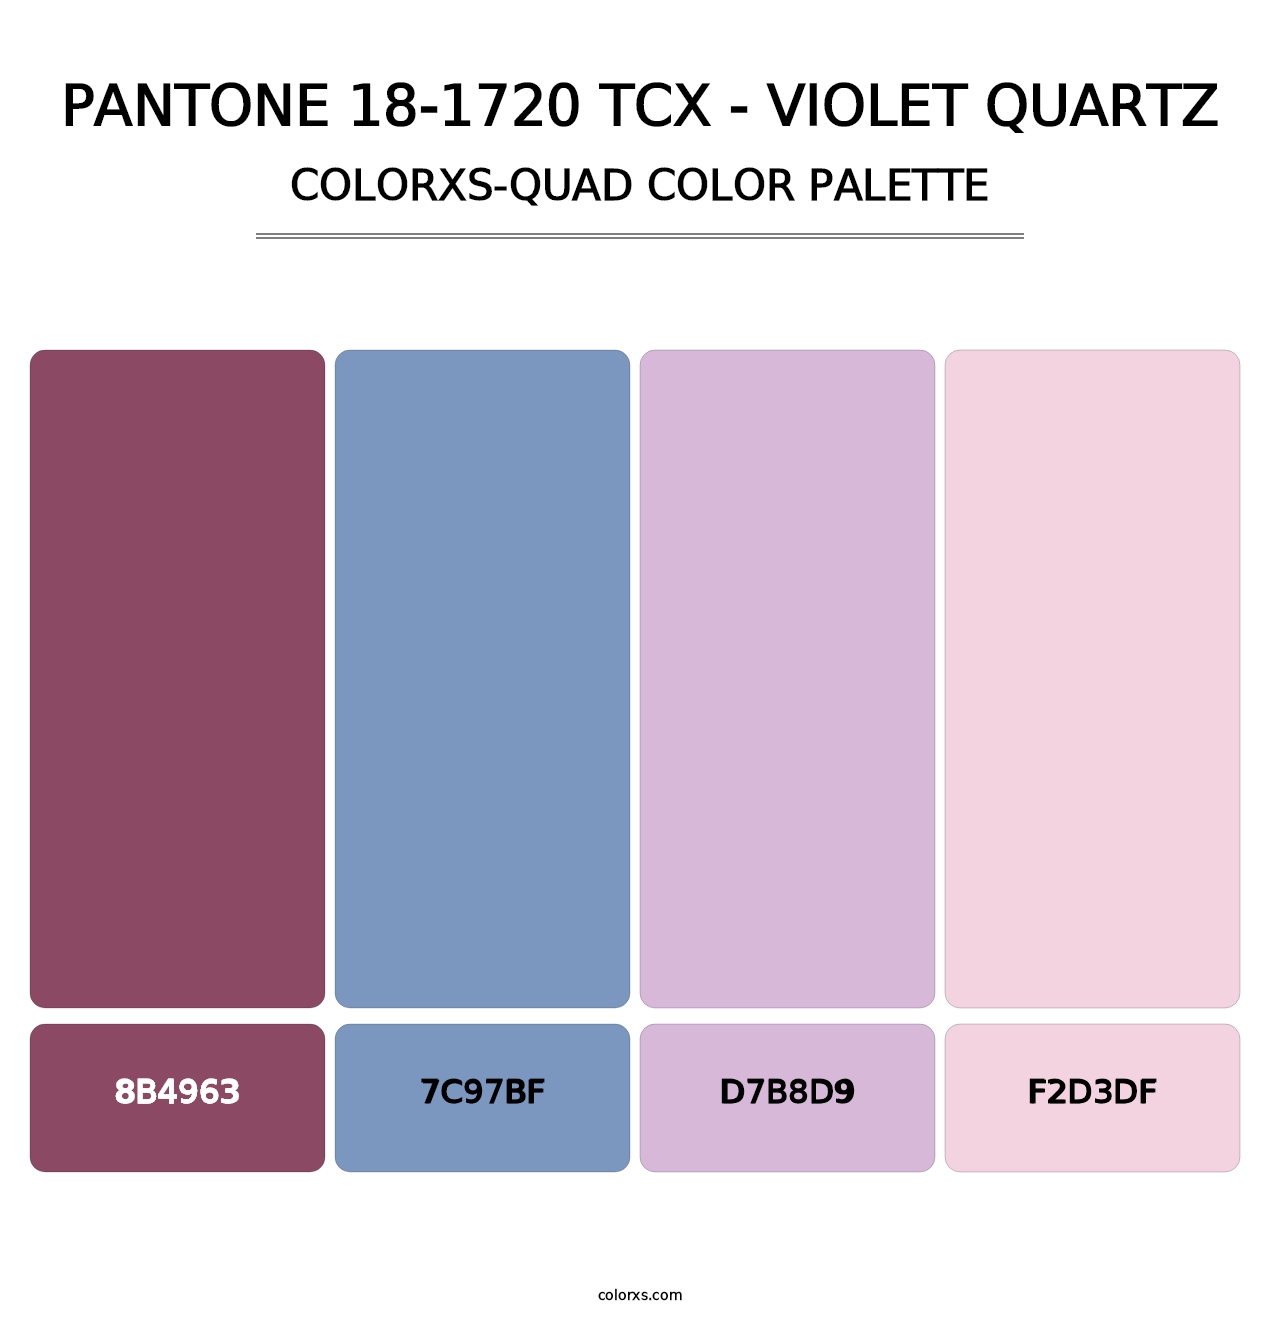 PANTONE 18-1720 TCX - Violet Quartz - Colorxs Quad Palette